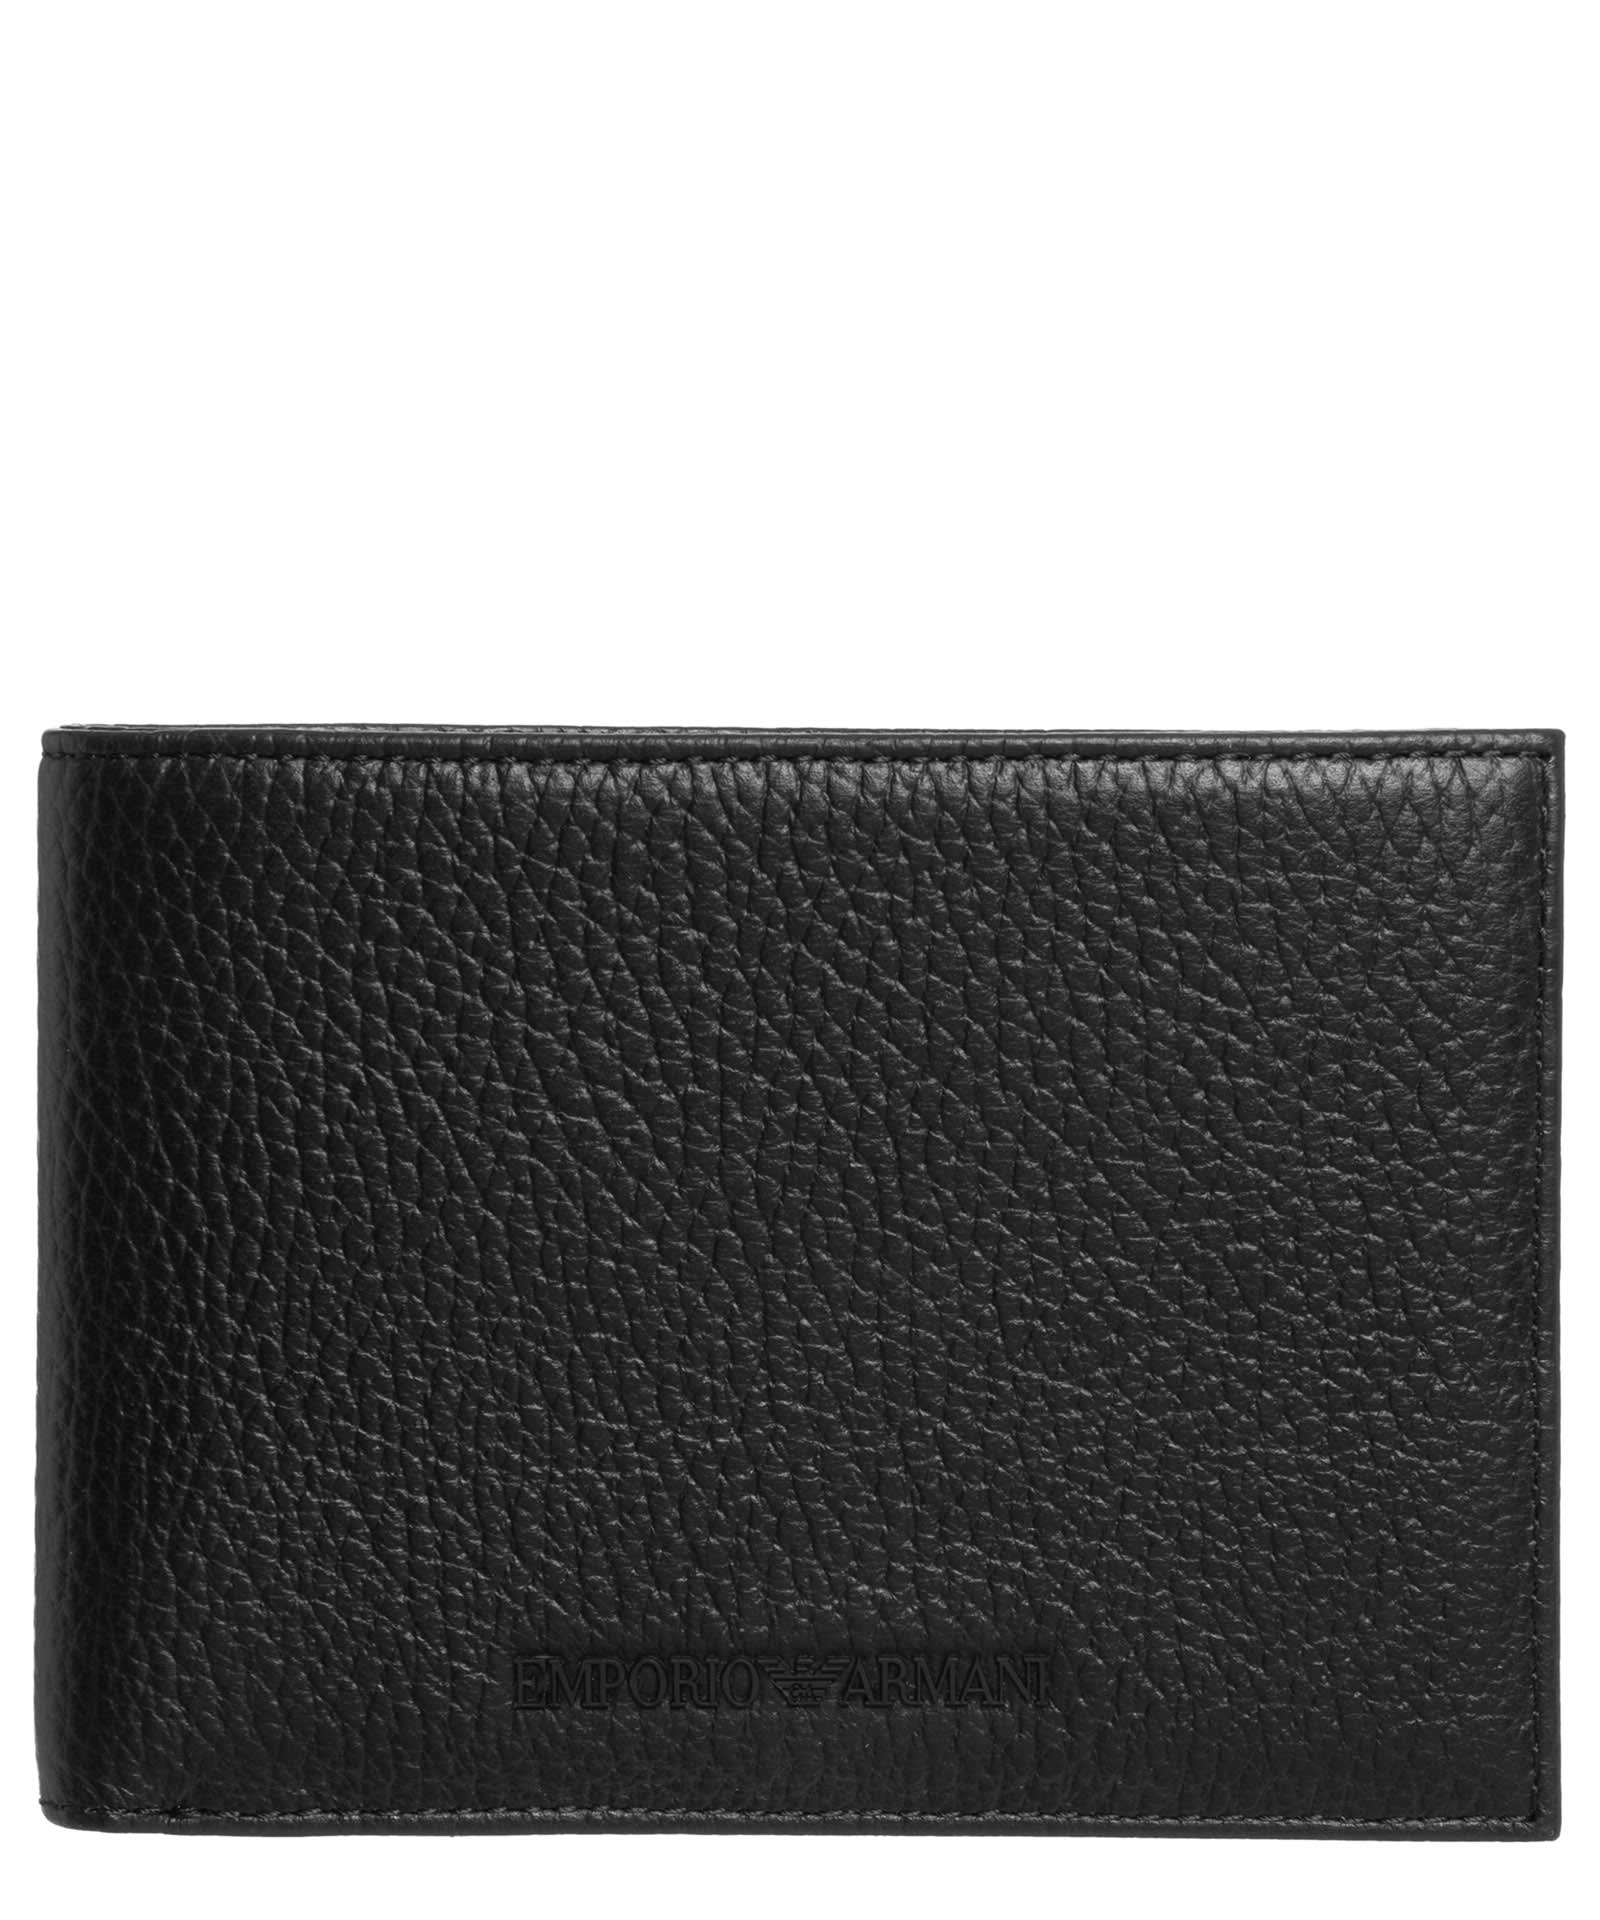 Emporio Armani Men's Leather Wallet